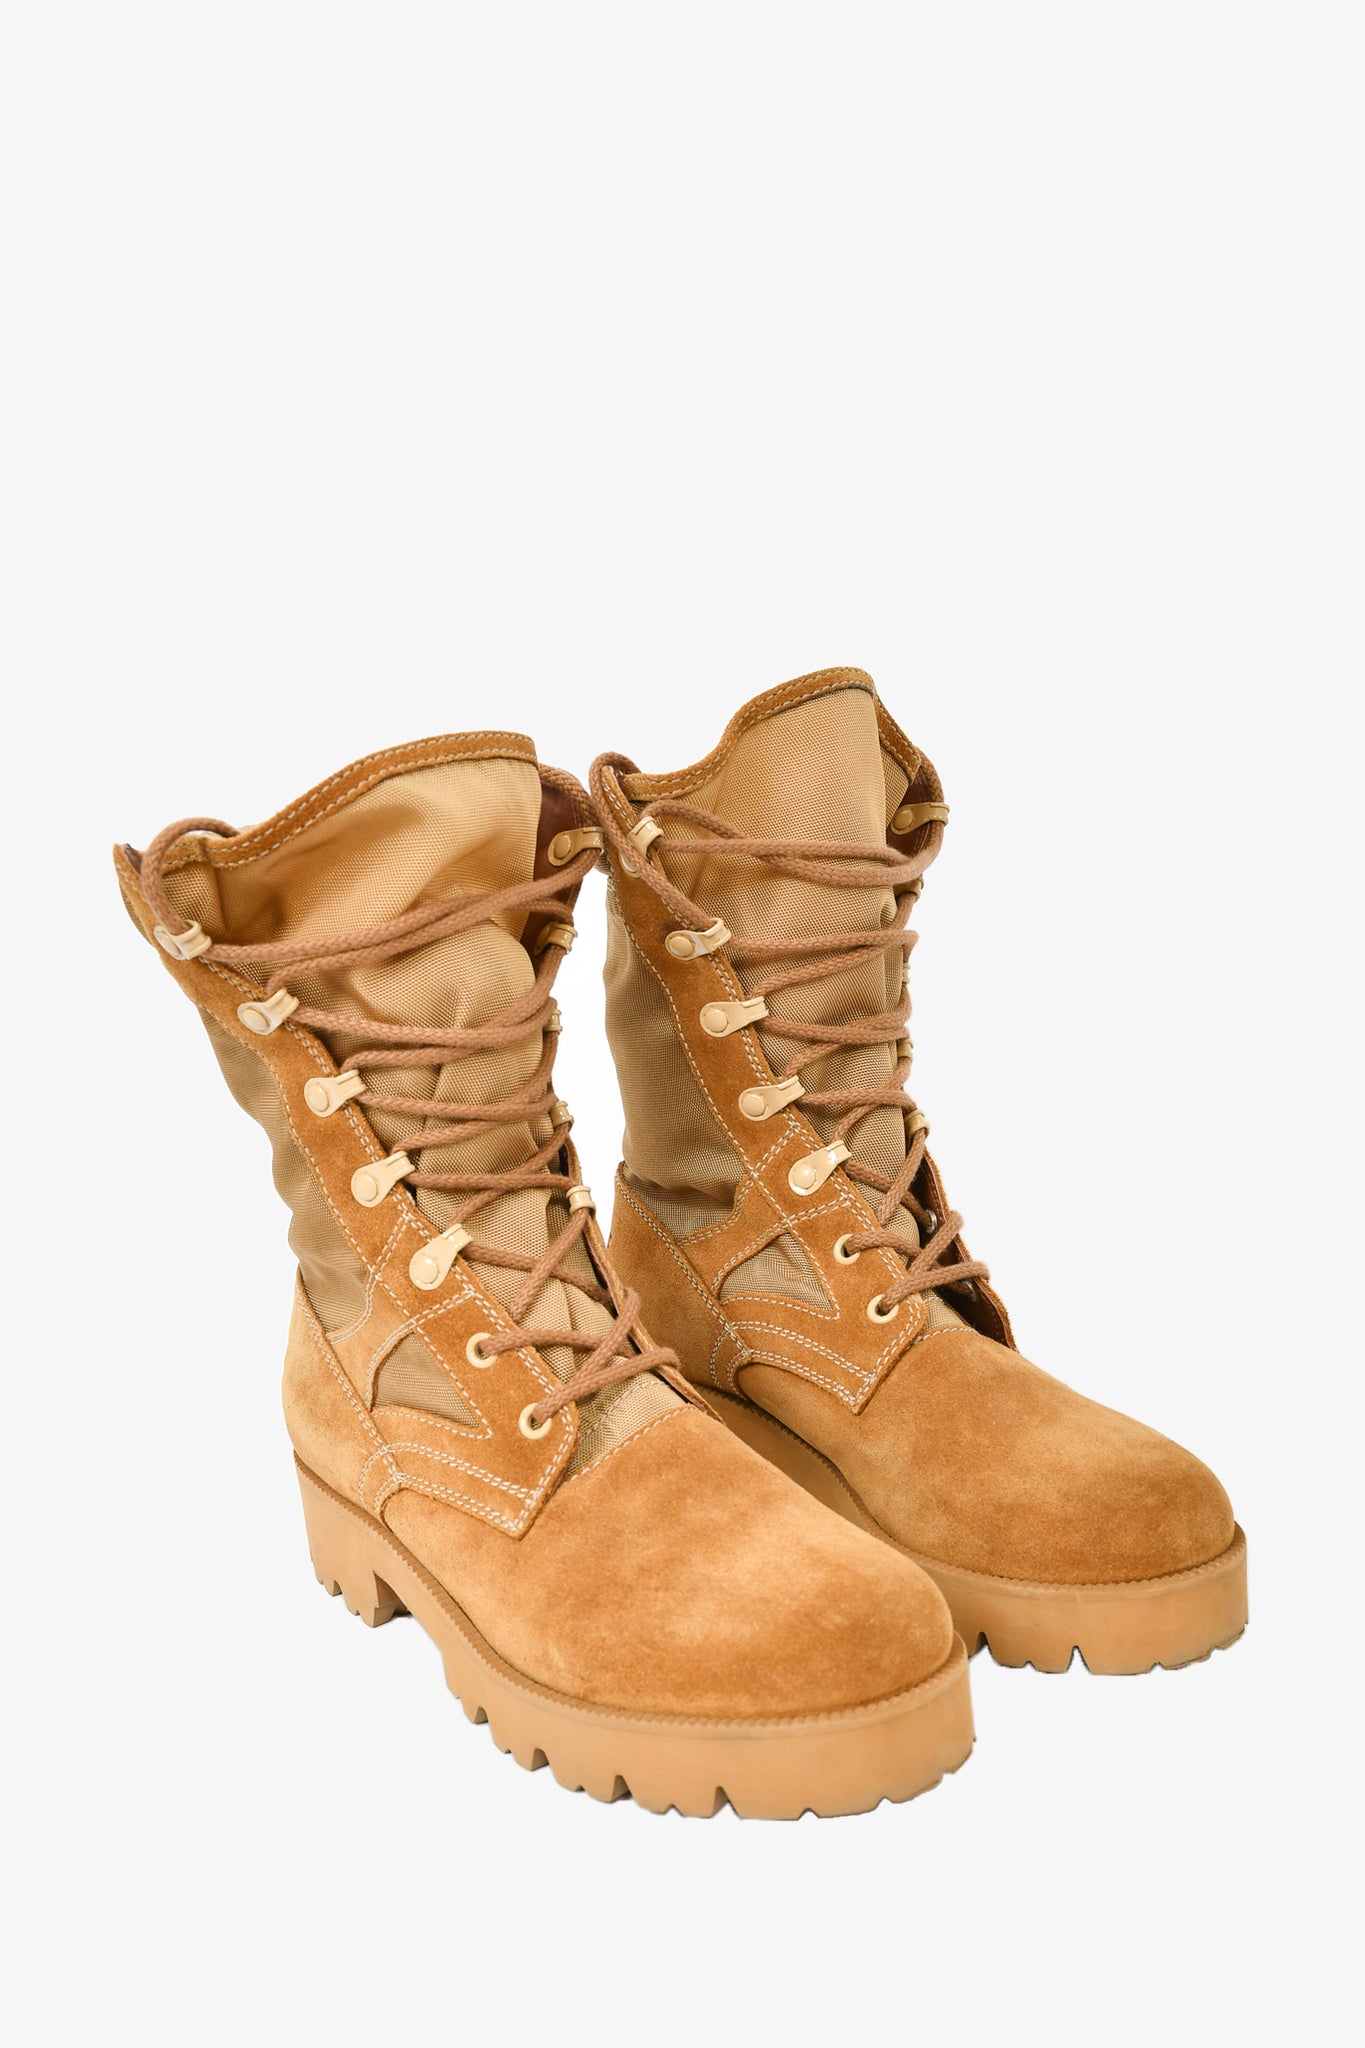 Celine Khaki Suede/Mesh Combat Boots sz 37.5 – Mine & Yours